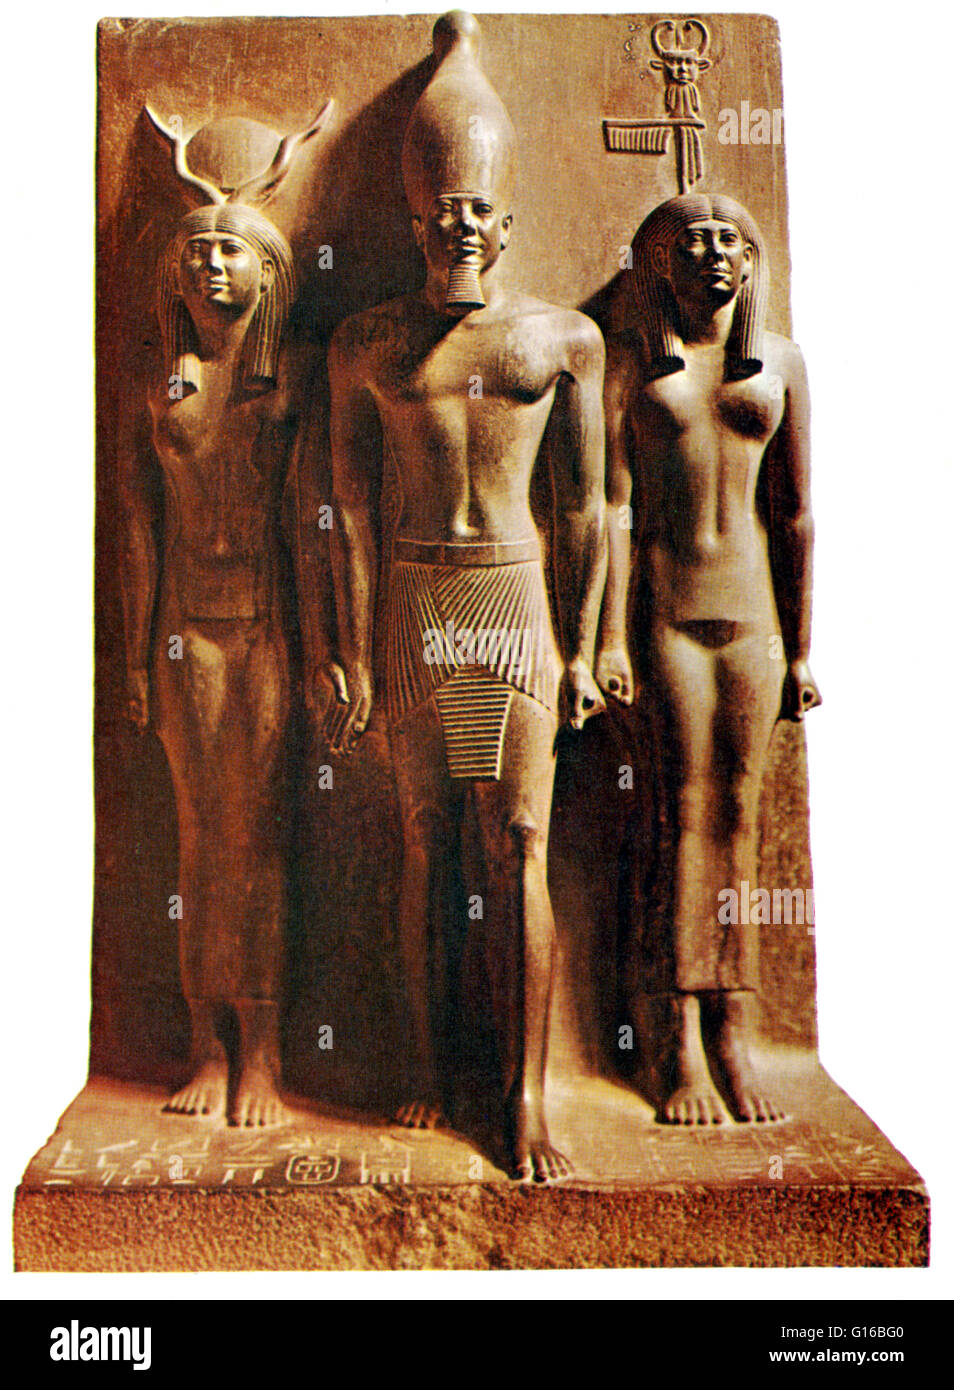 Légende : Triade statue de pharaon Menkaura, accompagné de la déesse Hathor (sur sa droite) et la personnification de la nome de Diospolis parva (sur sa gauche).' Menkaourê était un roi égyptien (pharaon) de la Ive dynastie durant l'Ancien Royaume. Banque D'Images